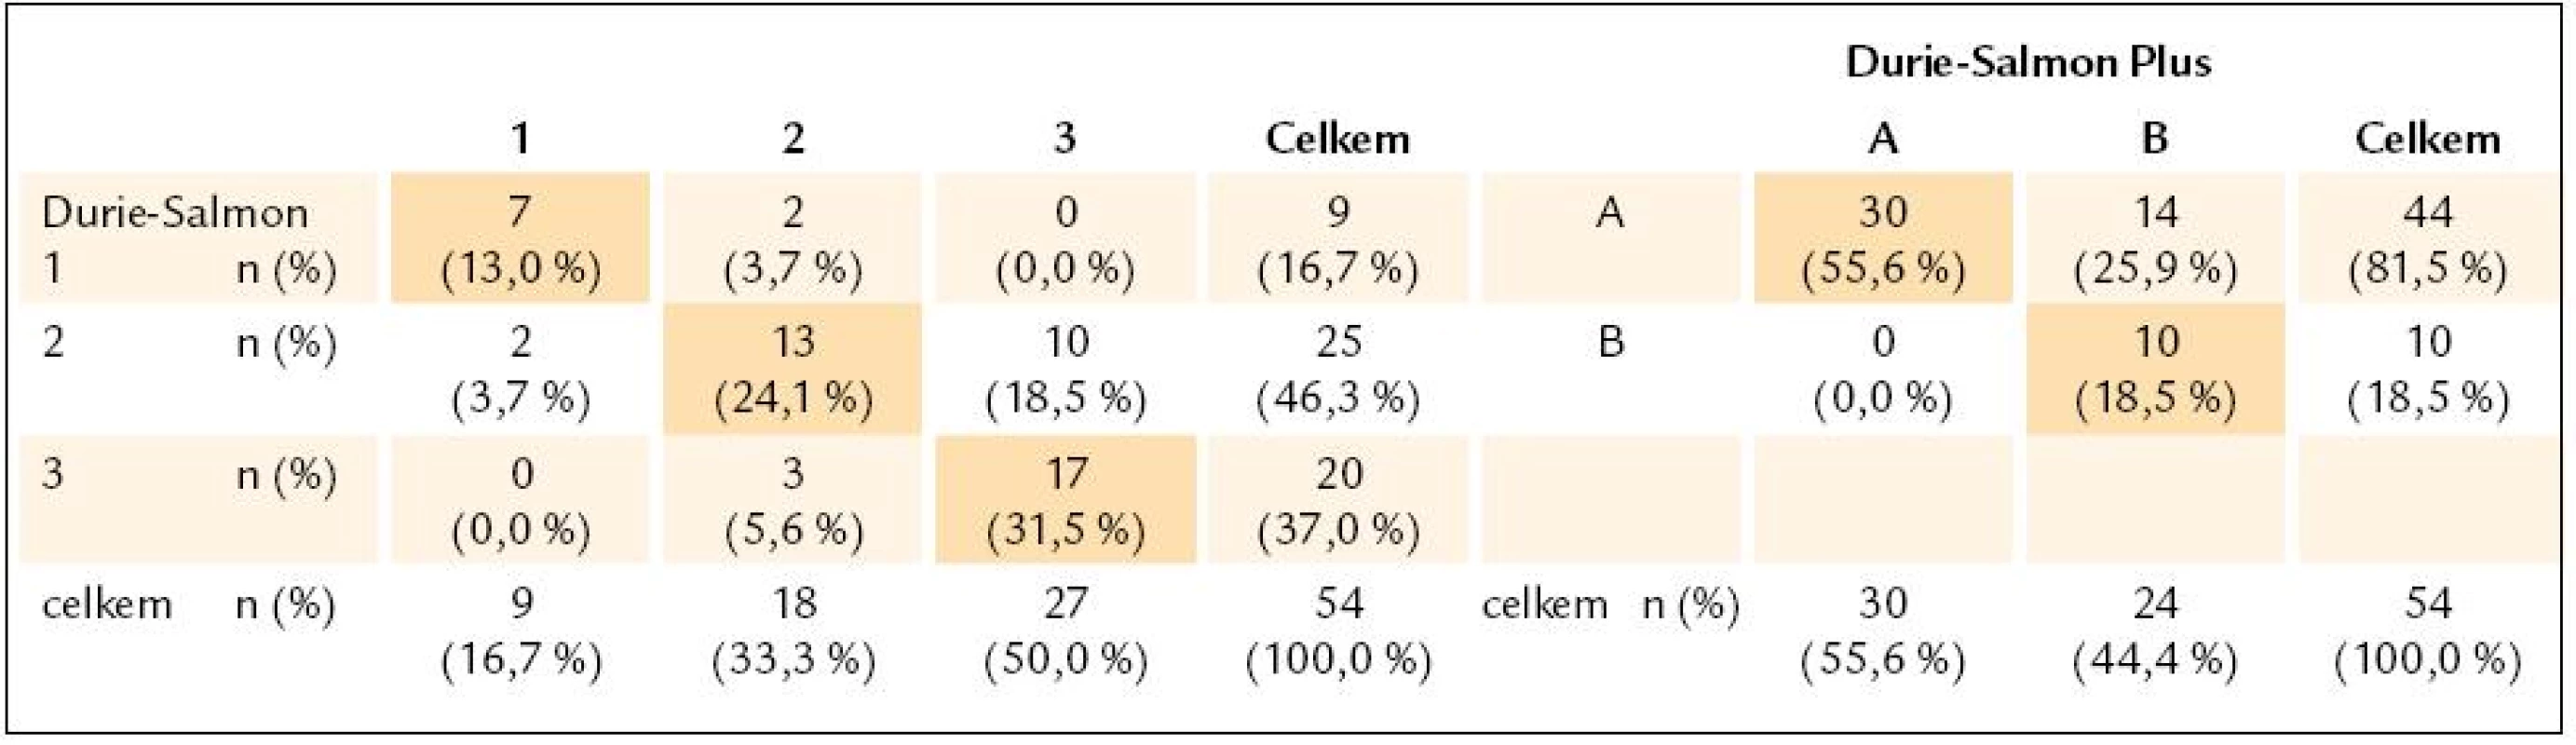 Kontingenční tabulky jednotlivých stadií 1–3 a podstadií A–B, vyhodnocených podle Durieho-Salmona a Durie-Salmon Plus.